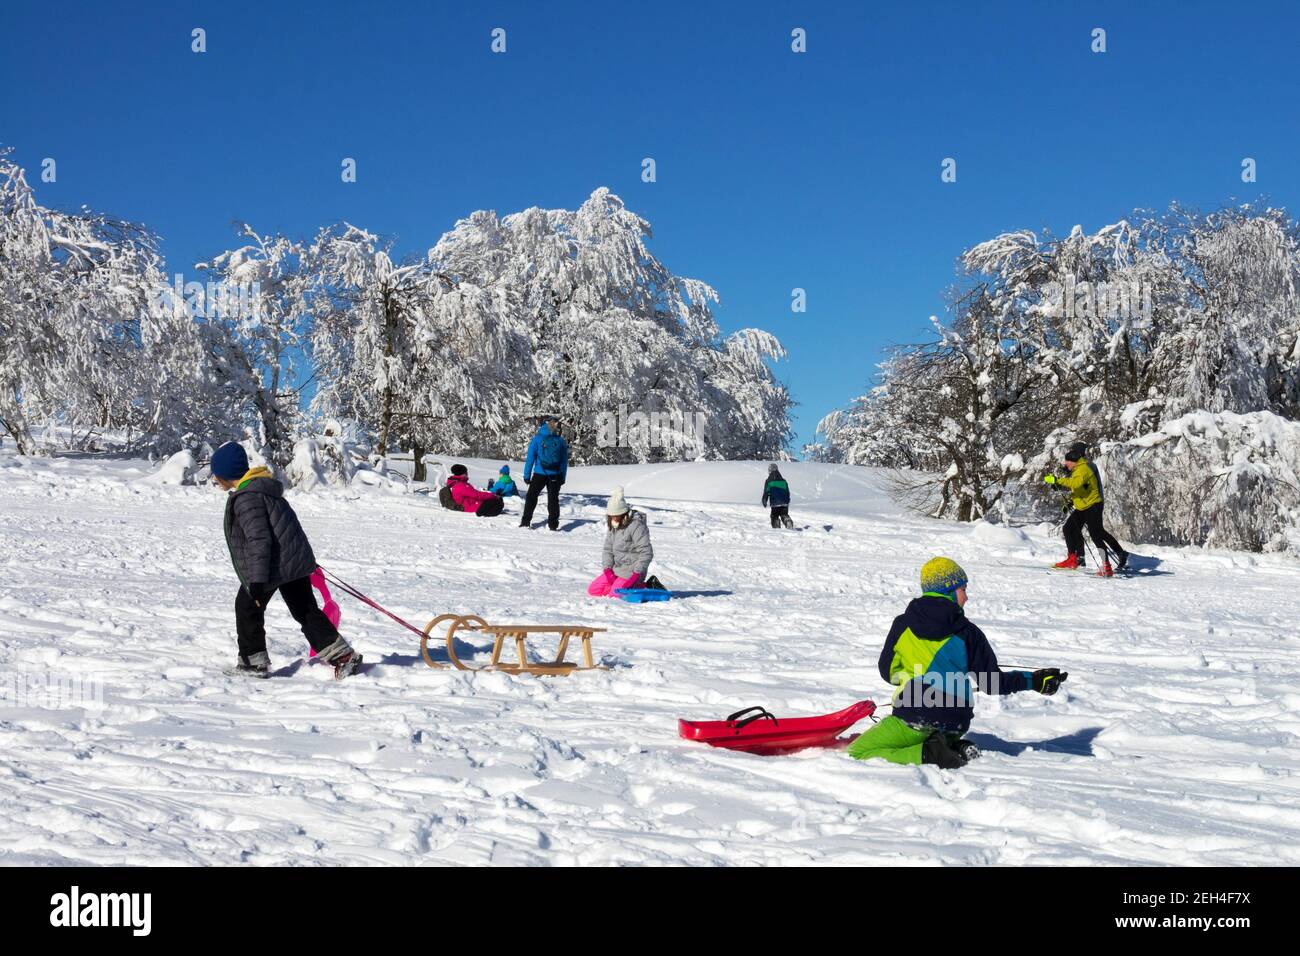 Les enfants traînent en hiver dans la neige en profitant de la journée ensoleillée Banque D'Images